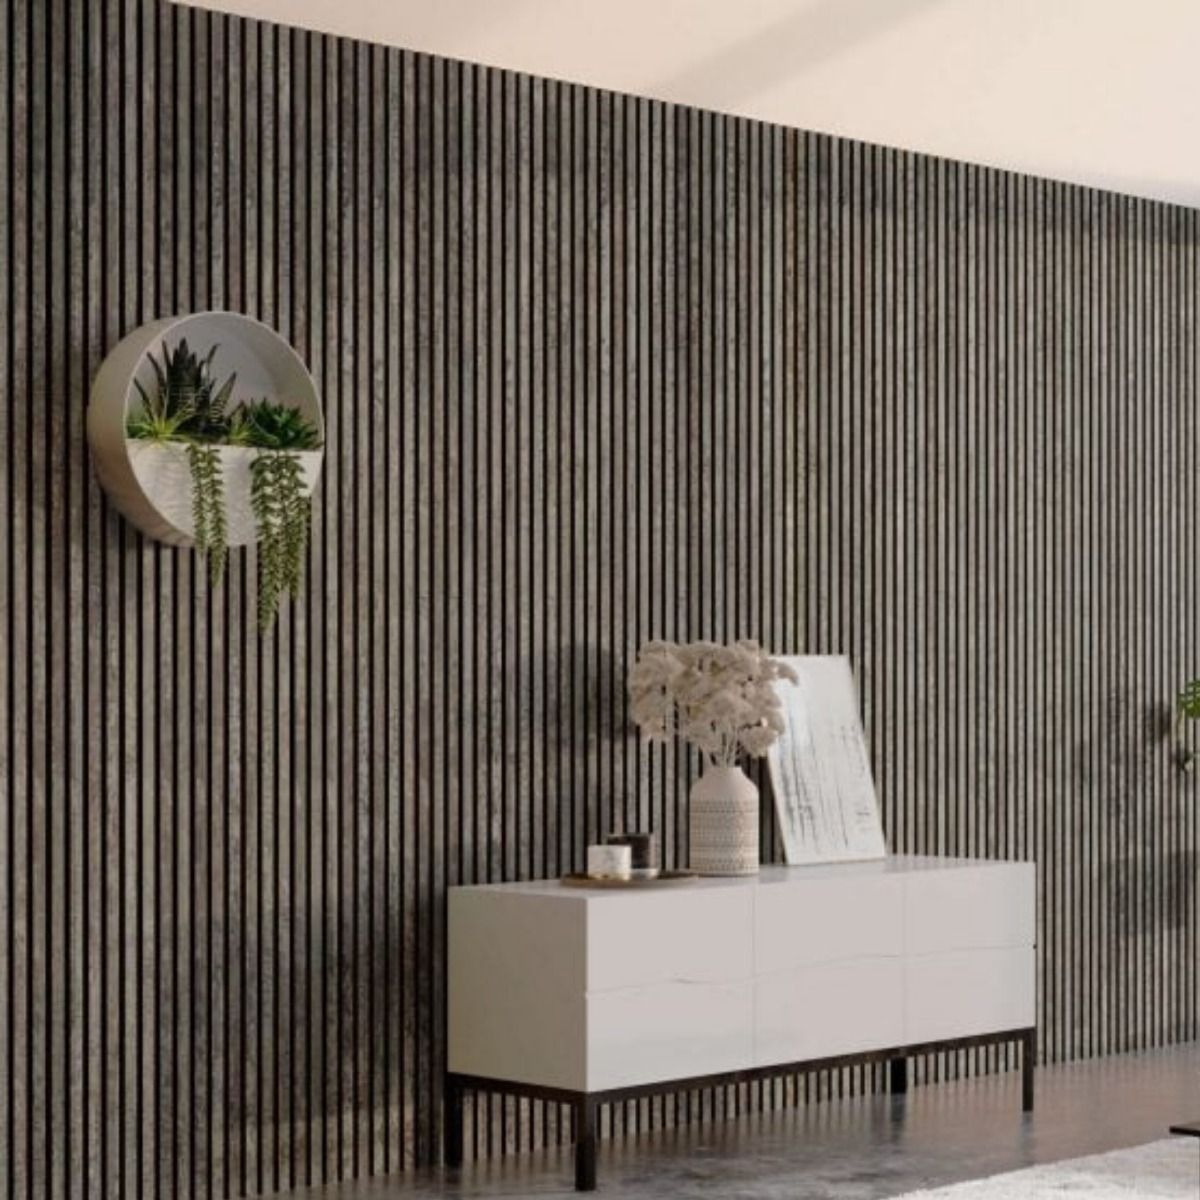 Panel acústico decorativo oxido gris ➨ WoodUpp 